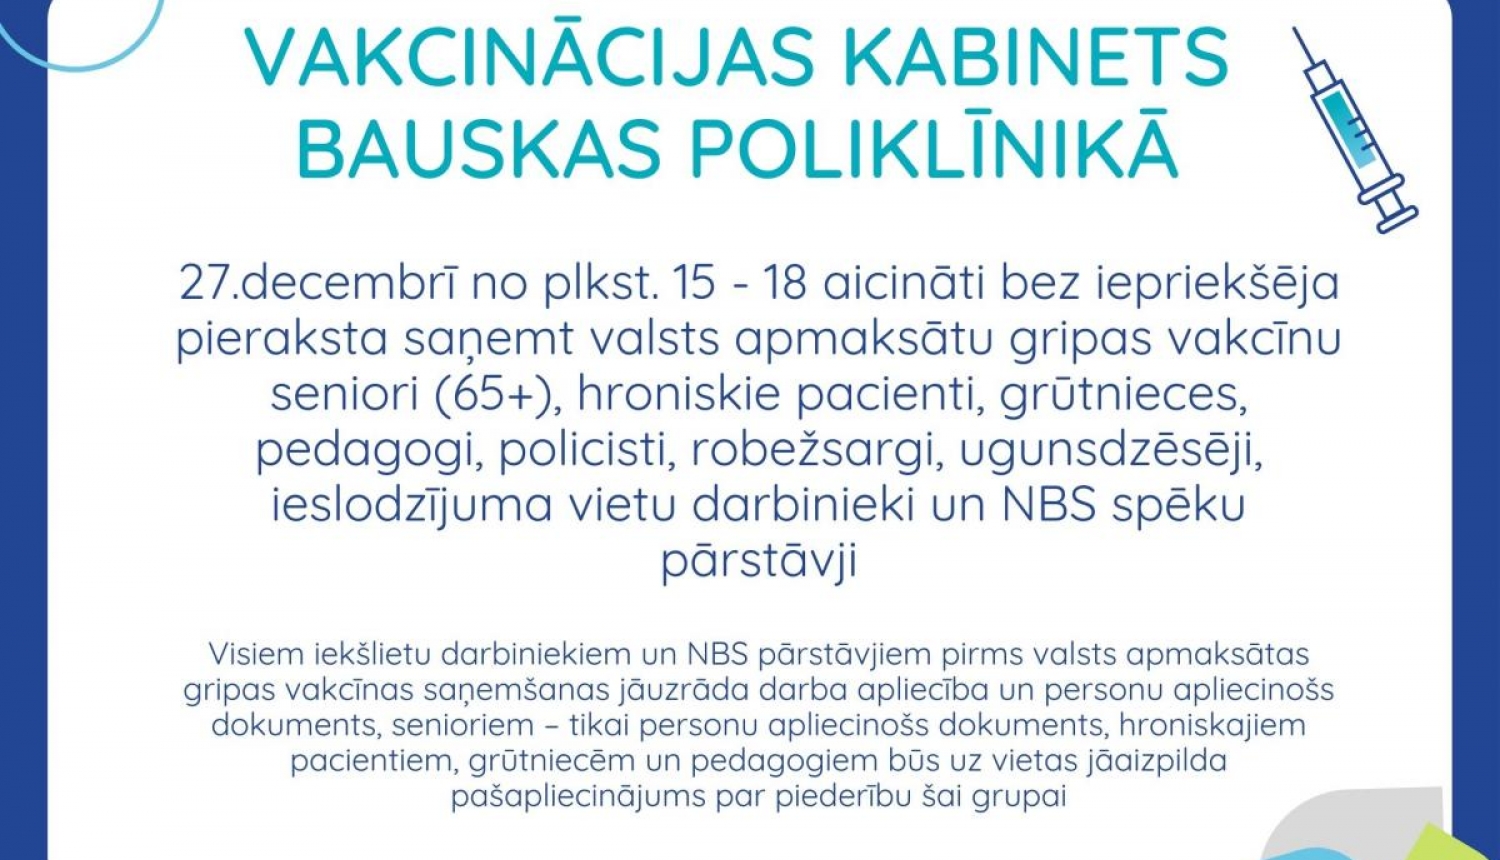 Iespēja vakcinēties pret gripu Vakcinācijas kabinetā Bauskas poliklīnikā 27. decembrī